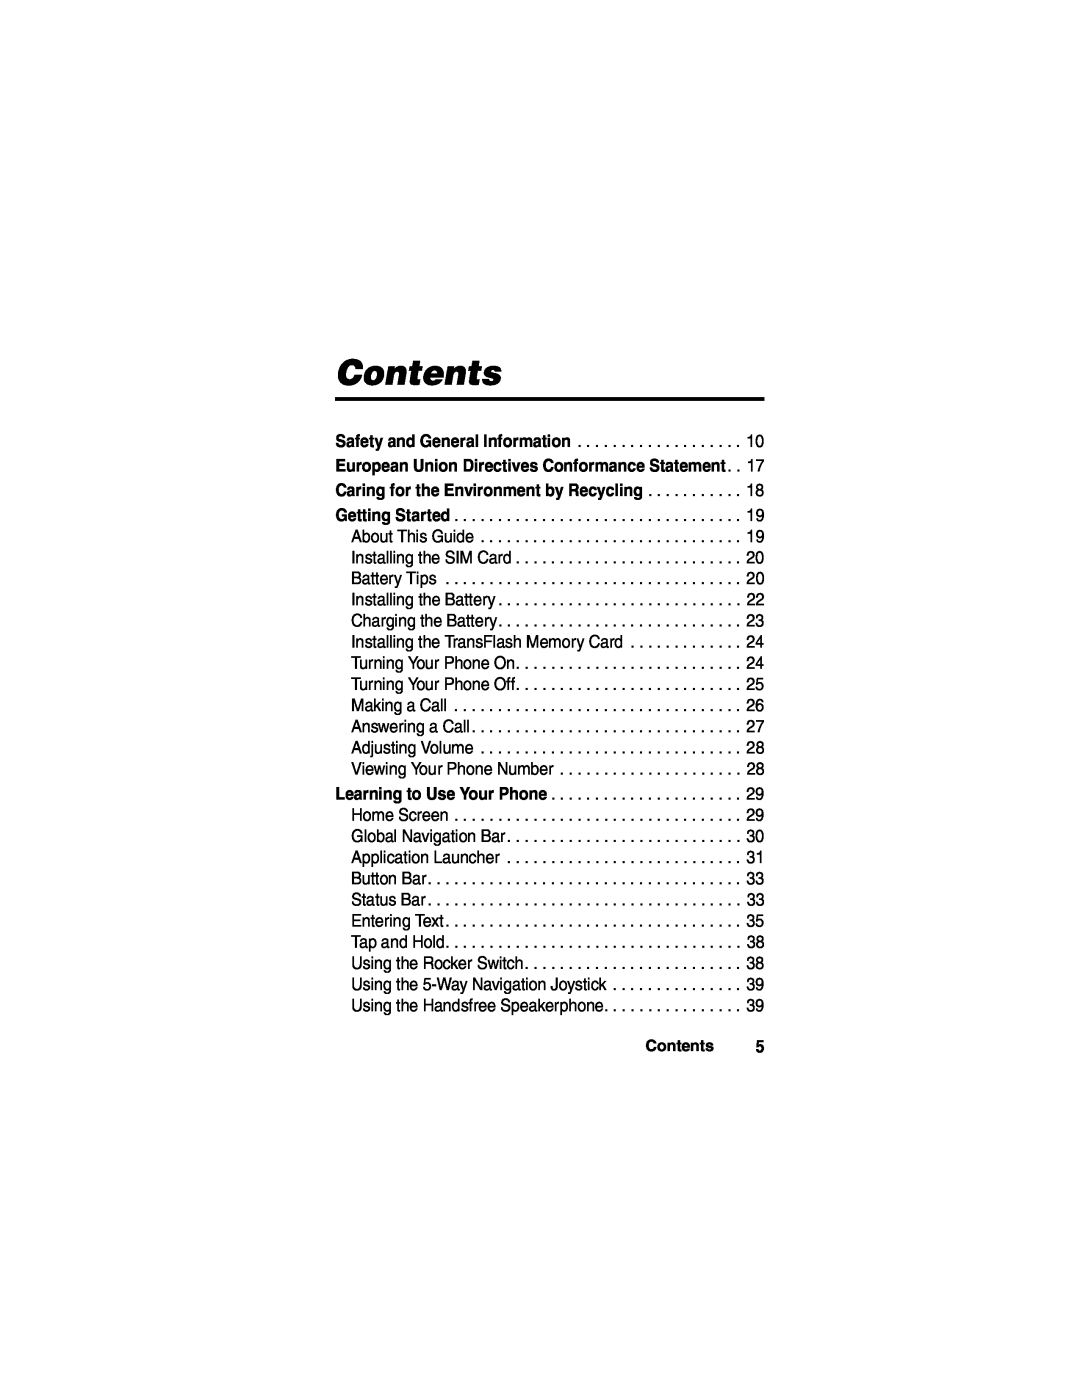 Motorola A780 manual Contents 